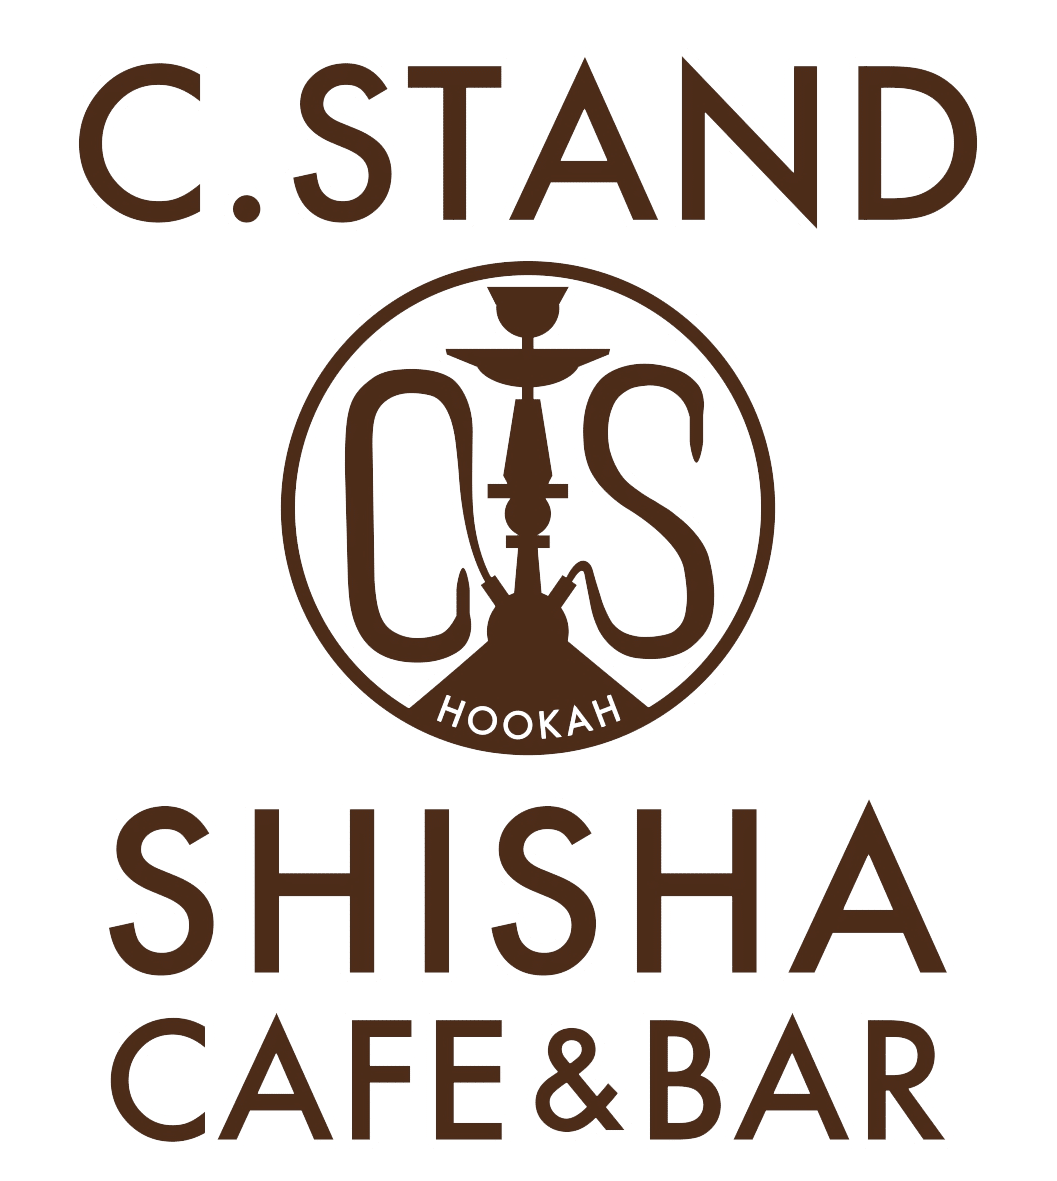 시샤 카페&바 C.STAND(시 스탠드) 롯폰기점